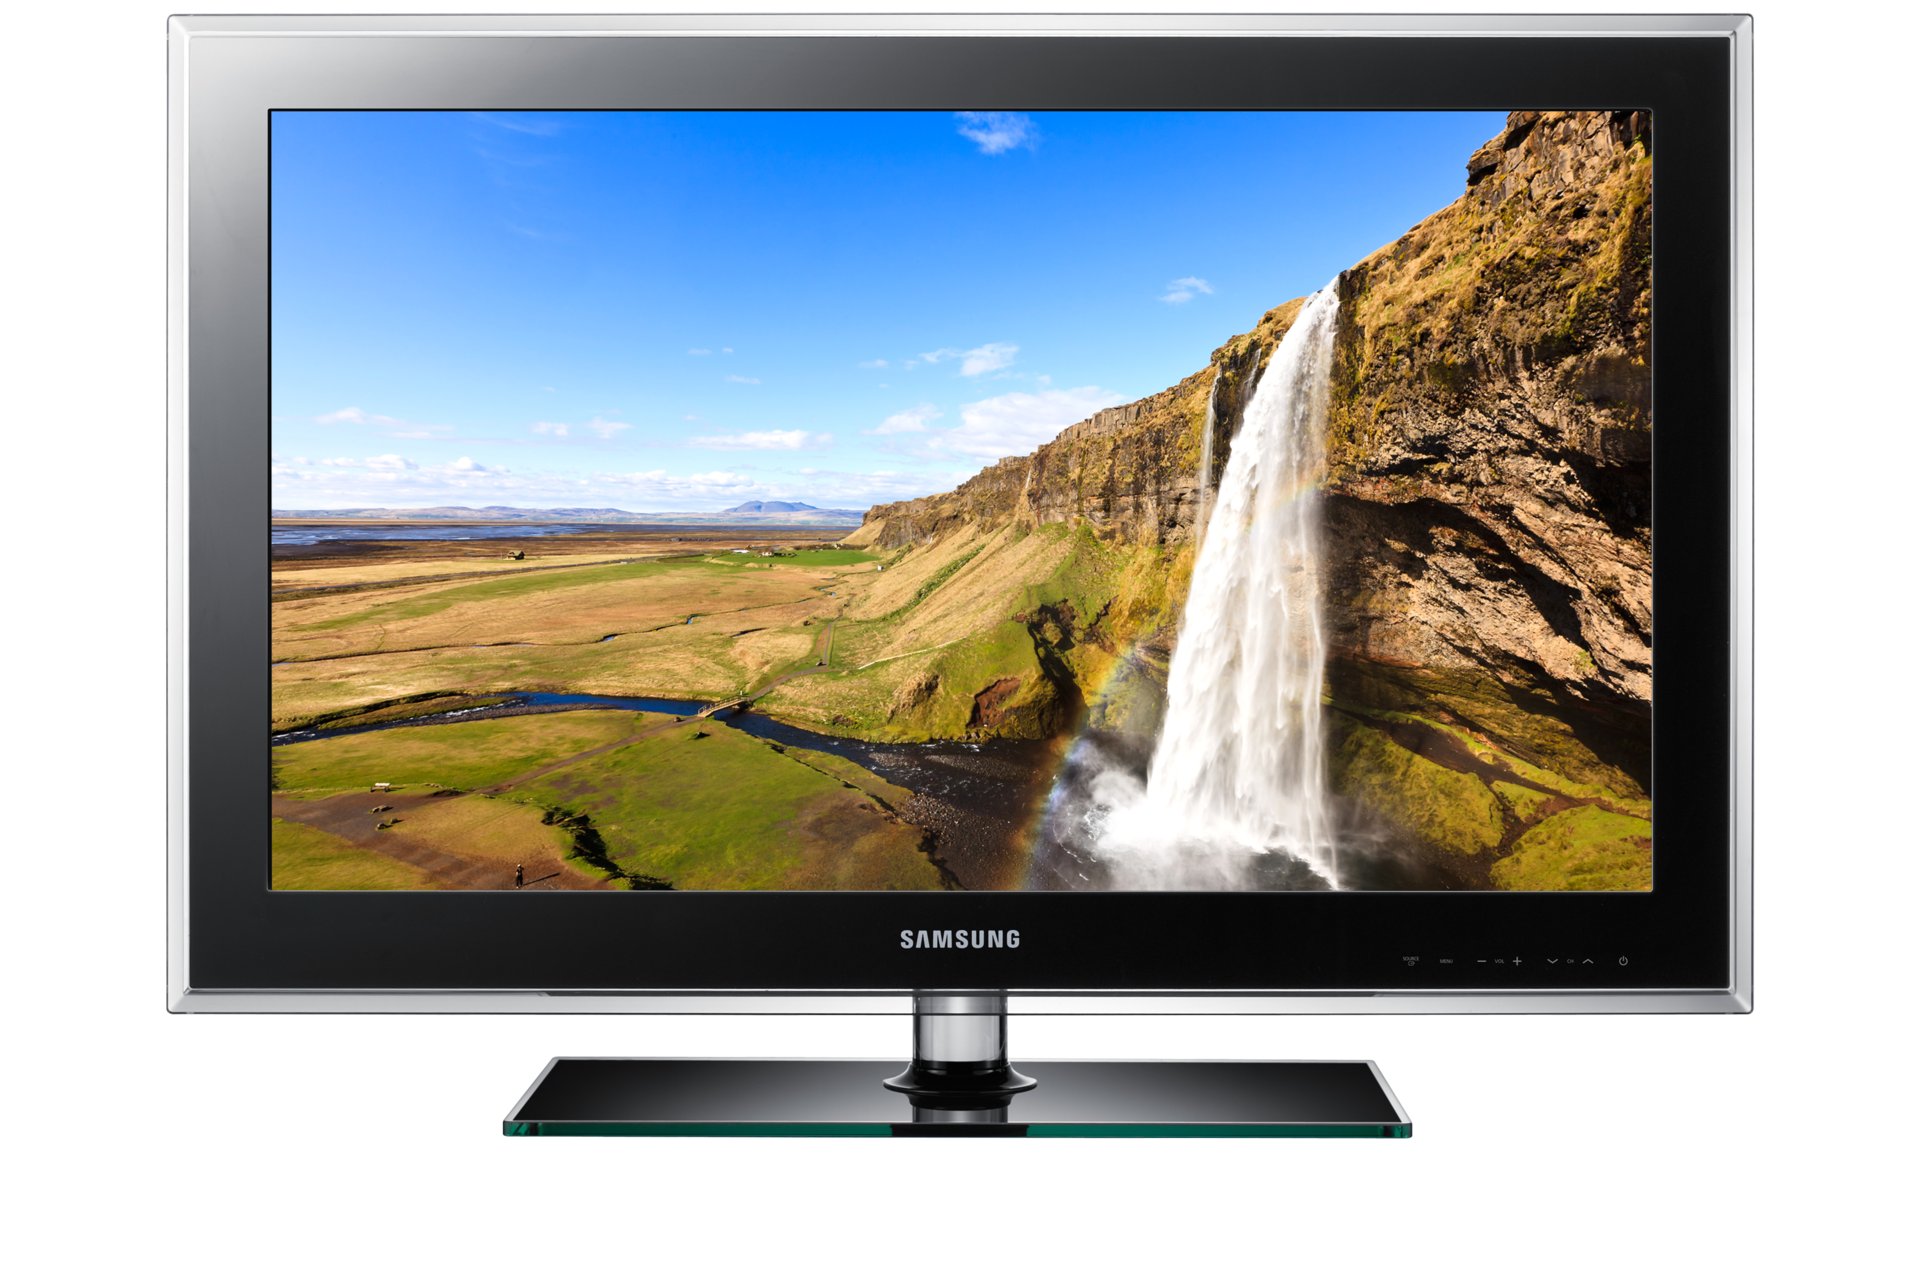 fremtid Charmerende landdistrikterne 46" D550 Series 5 Full HD LCD TV | Samsung Support South Africa